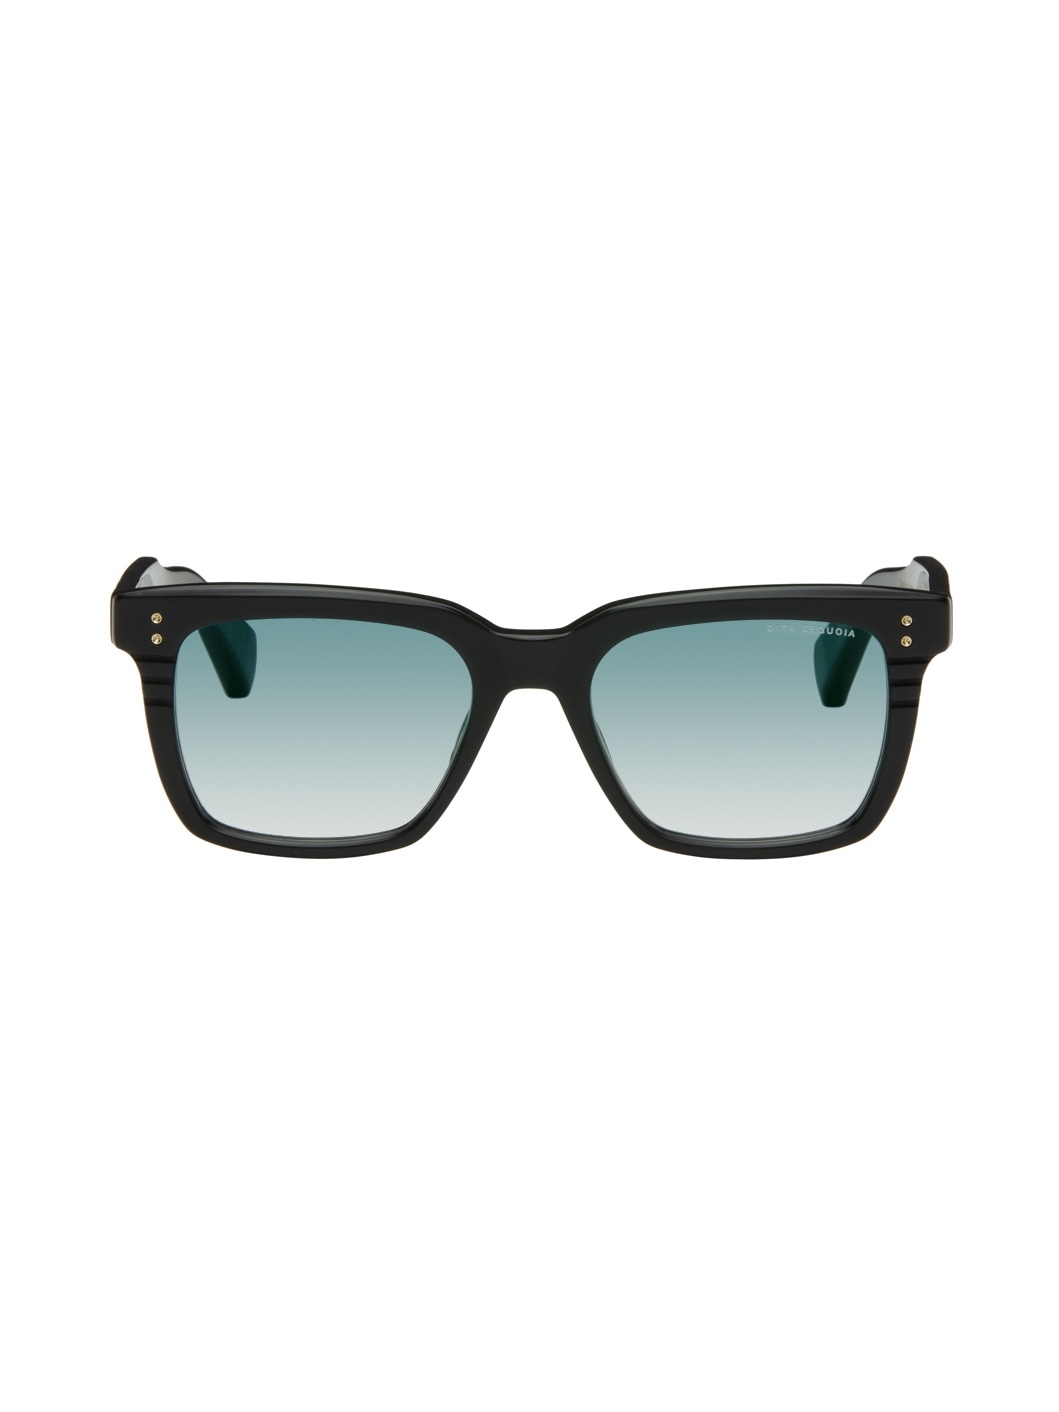 SSENSE Exclusive Black Sequoia Sunglasses - 1